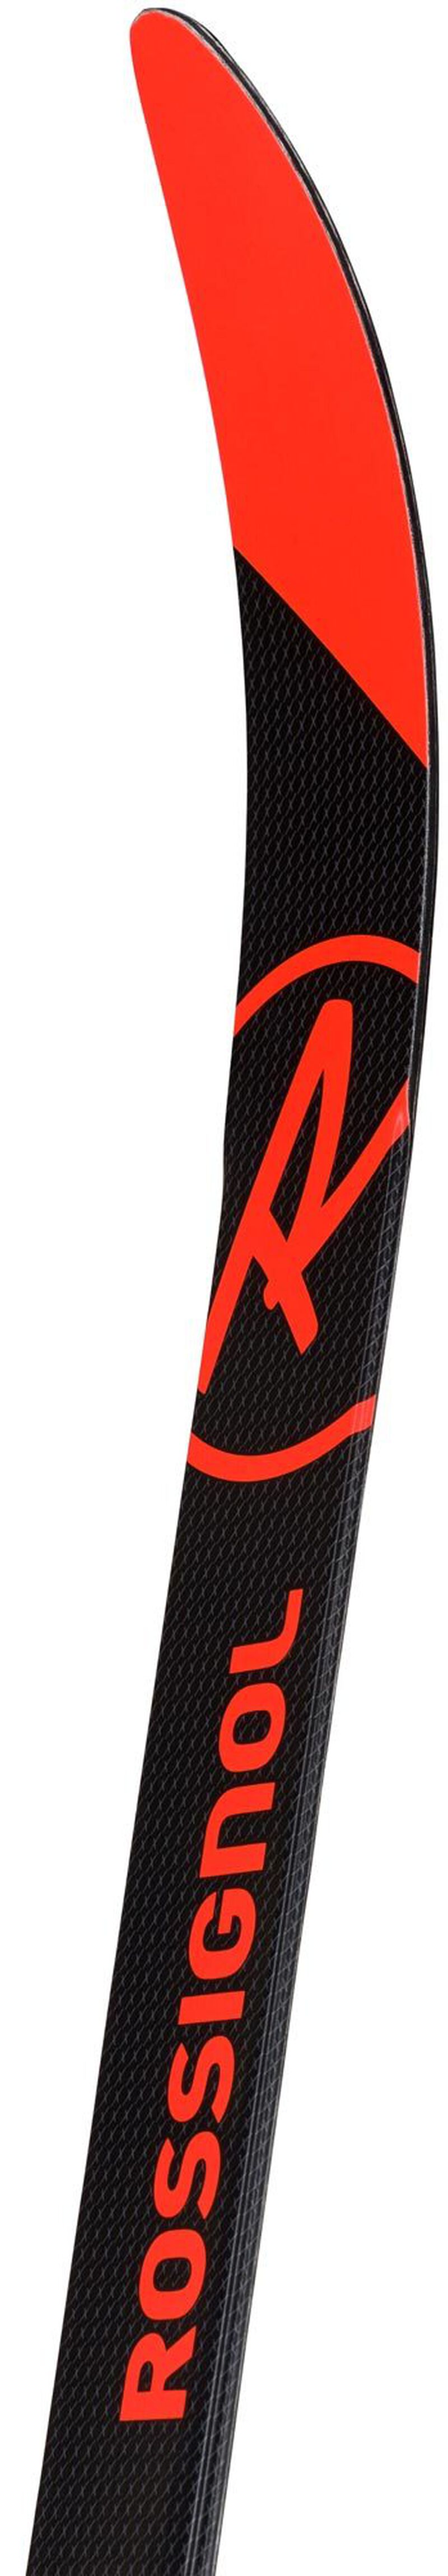 KINDER Nordic Skier SPEED SKIN (LS) (long sizes)